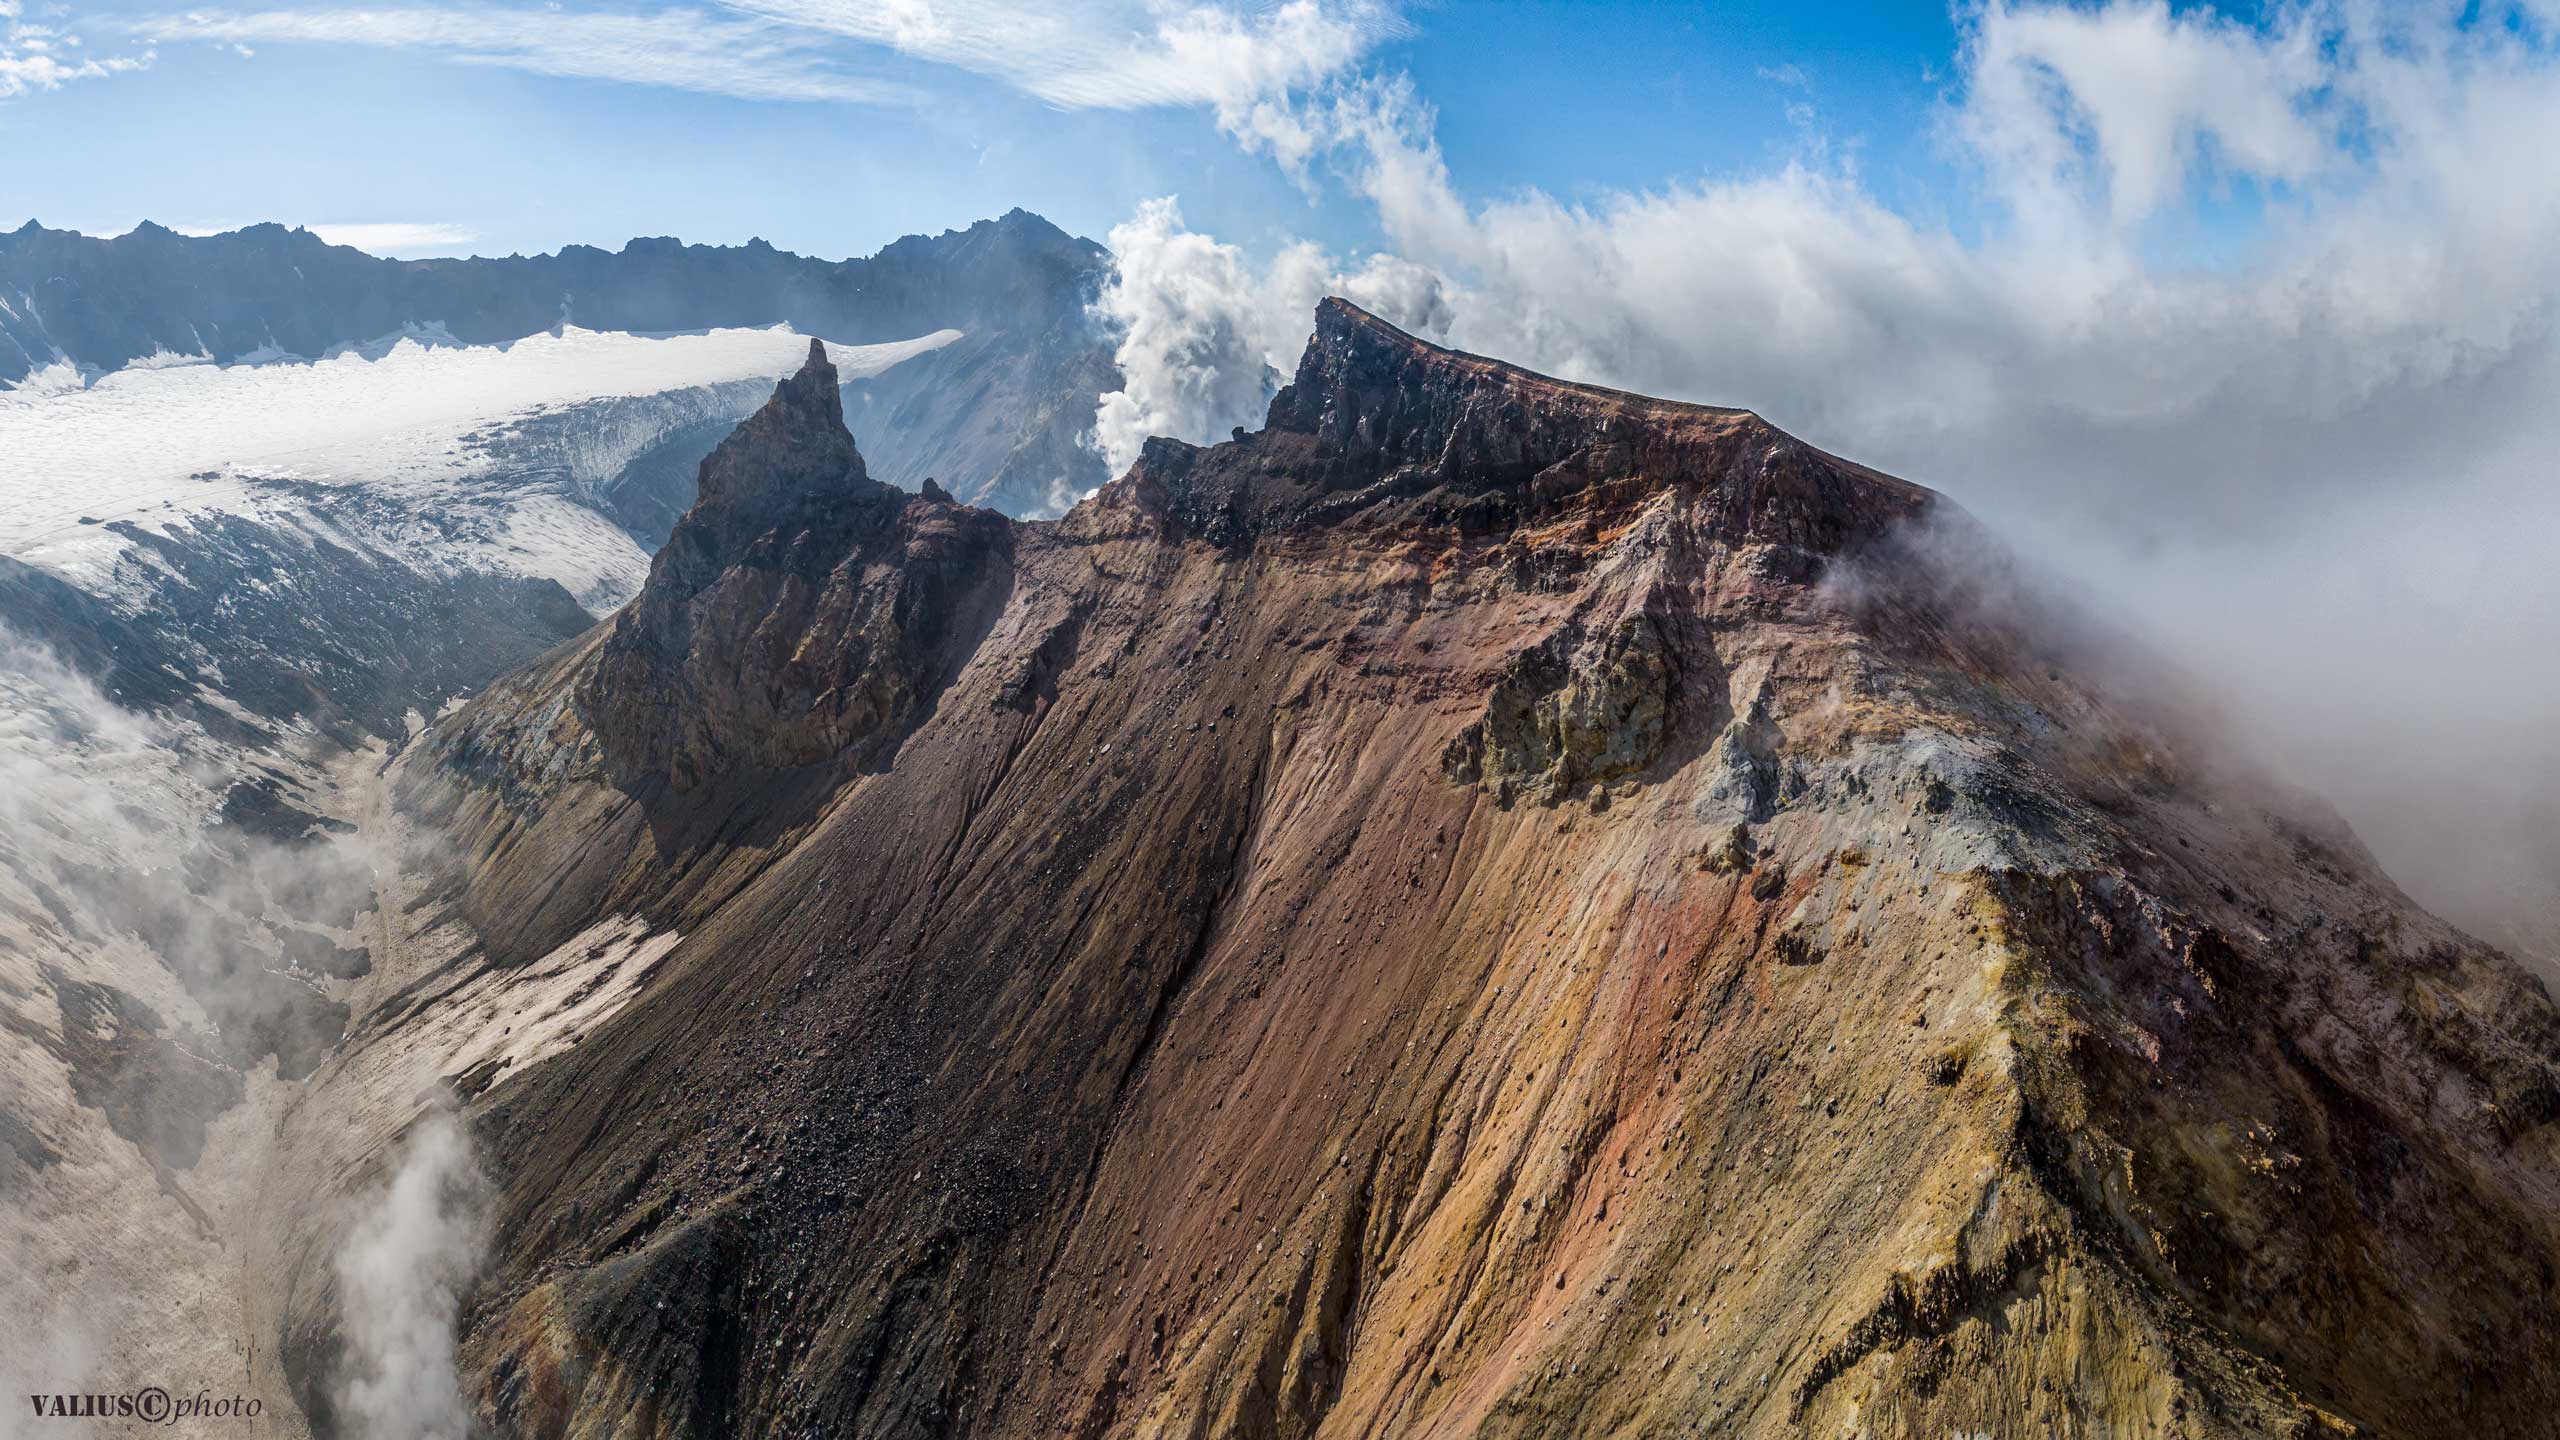 вулкан, volcano, dronophoto, airphoto, valius kamchatka, камчатка, путешествие, пейзаж, landscape, nature, russia, photo,  Valius